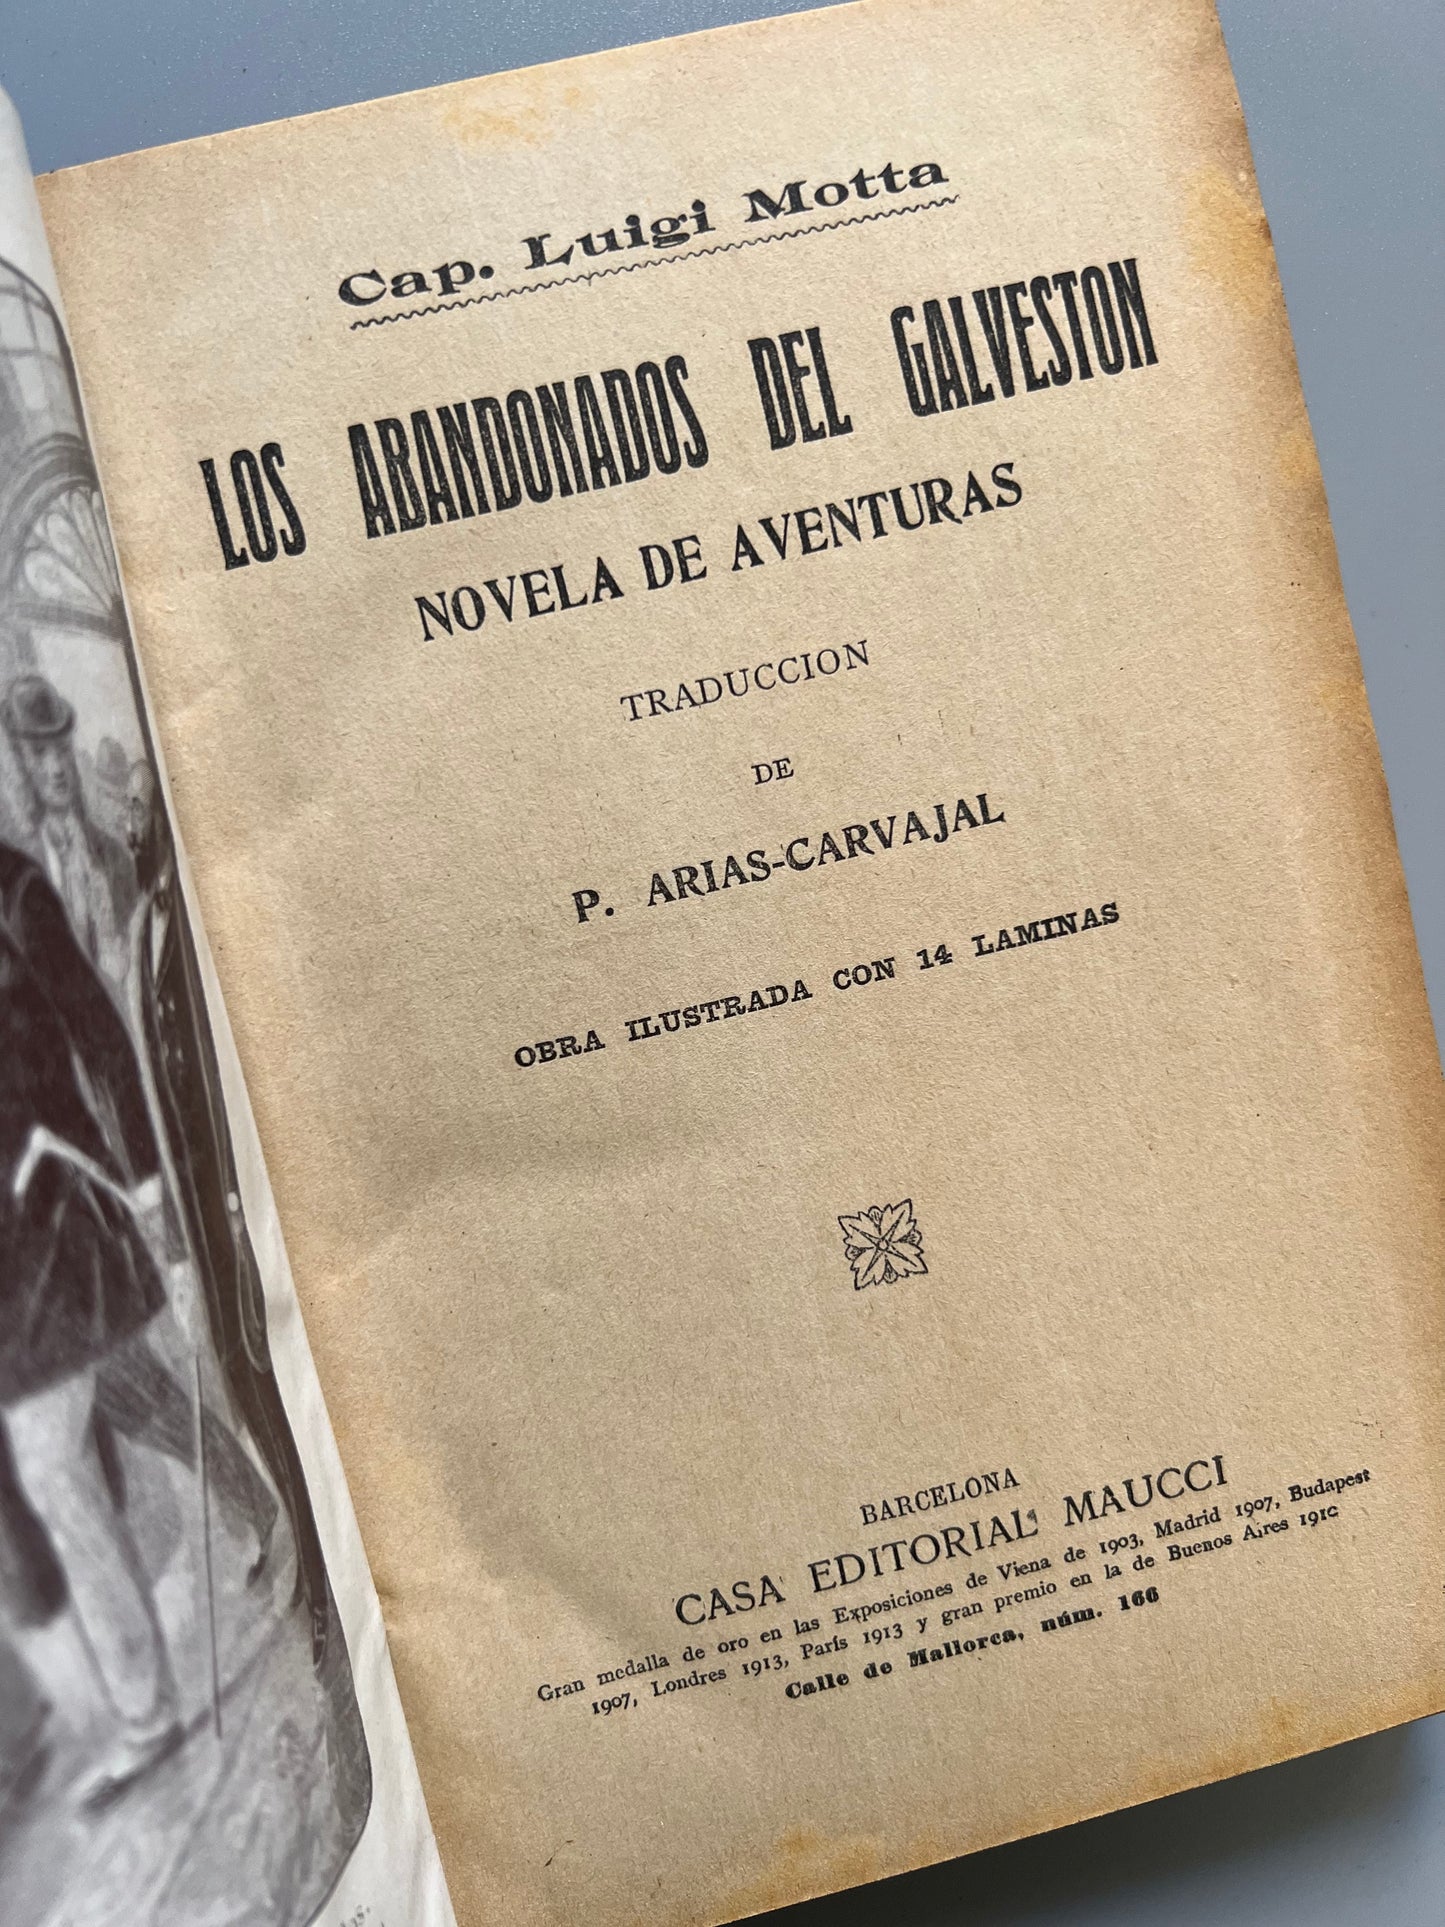 Los abandonados del Galveston, Cap. Luigi Motta - Casa editorial Maucci, ca. 1915